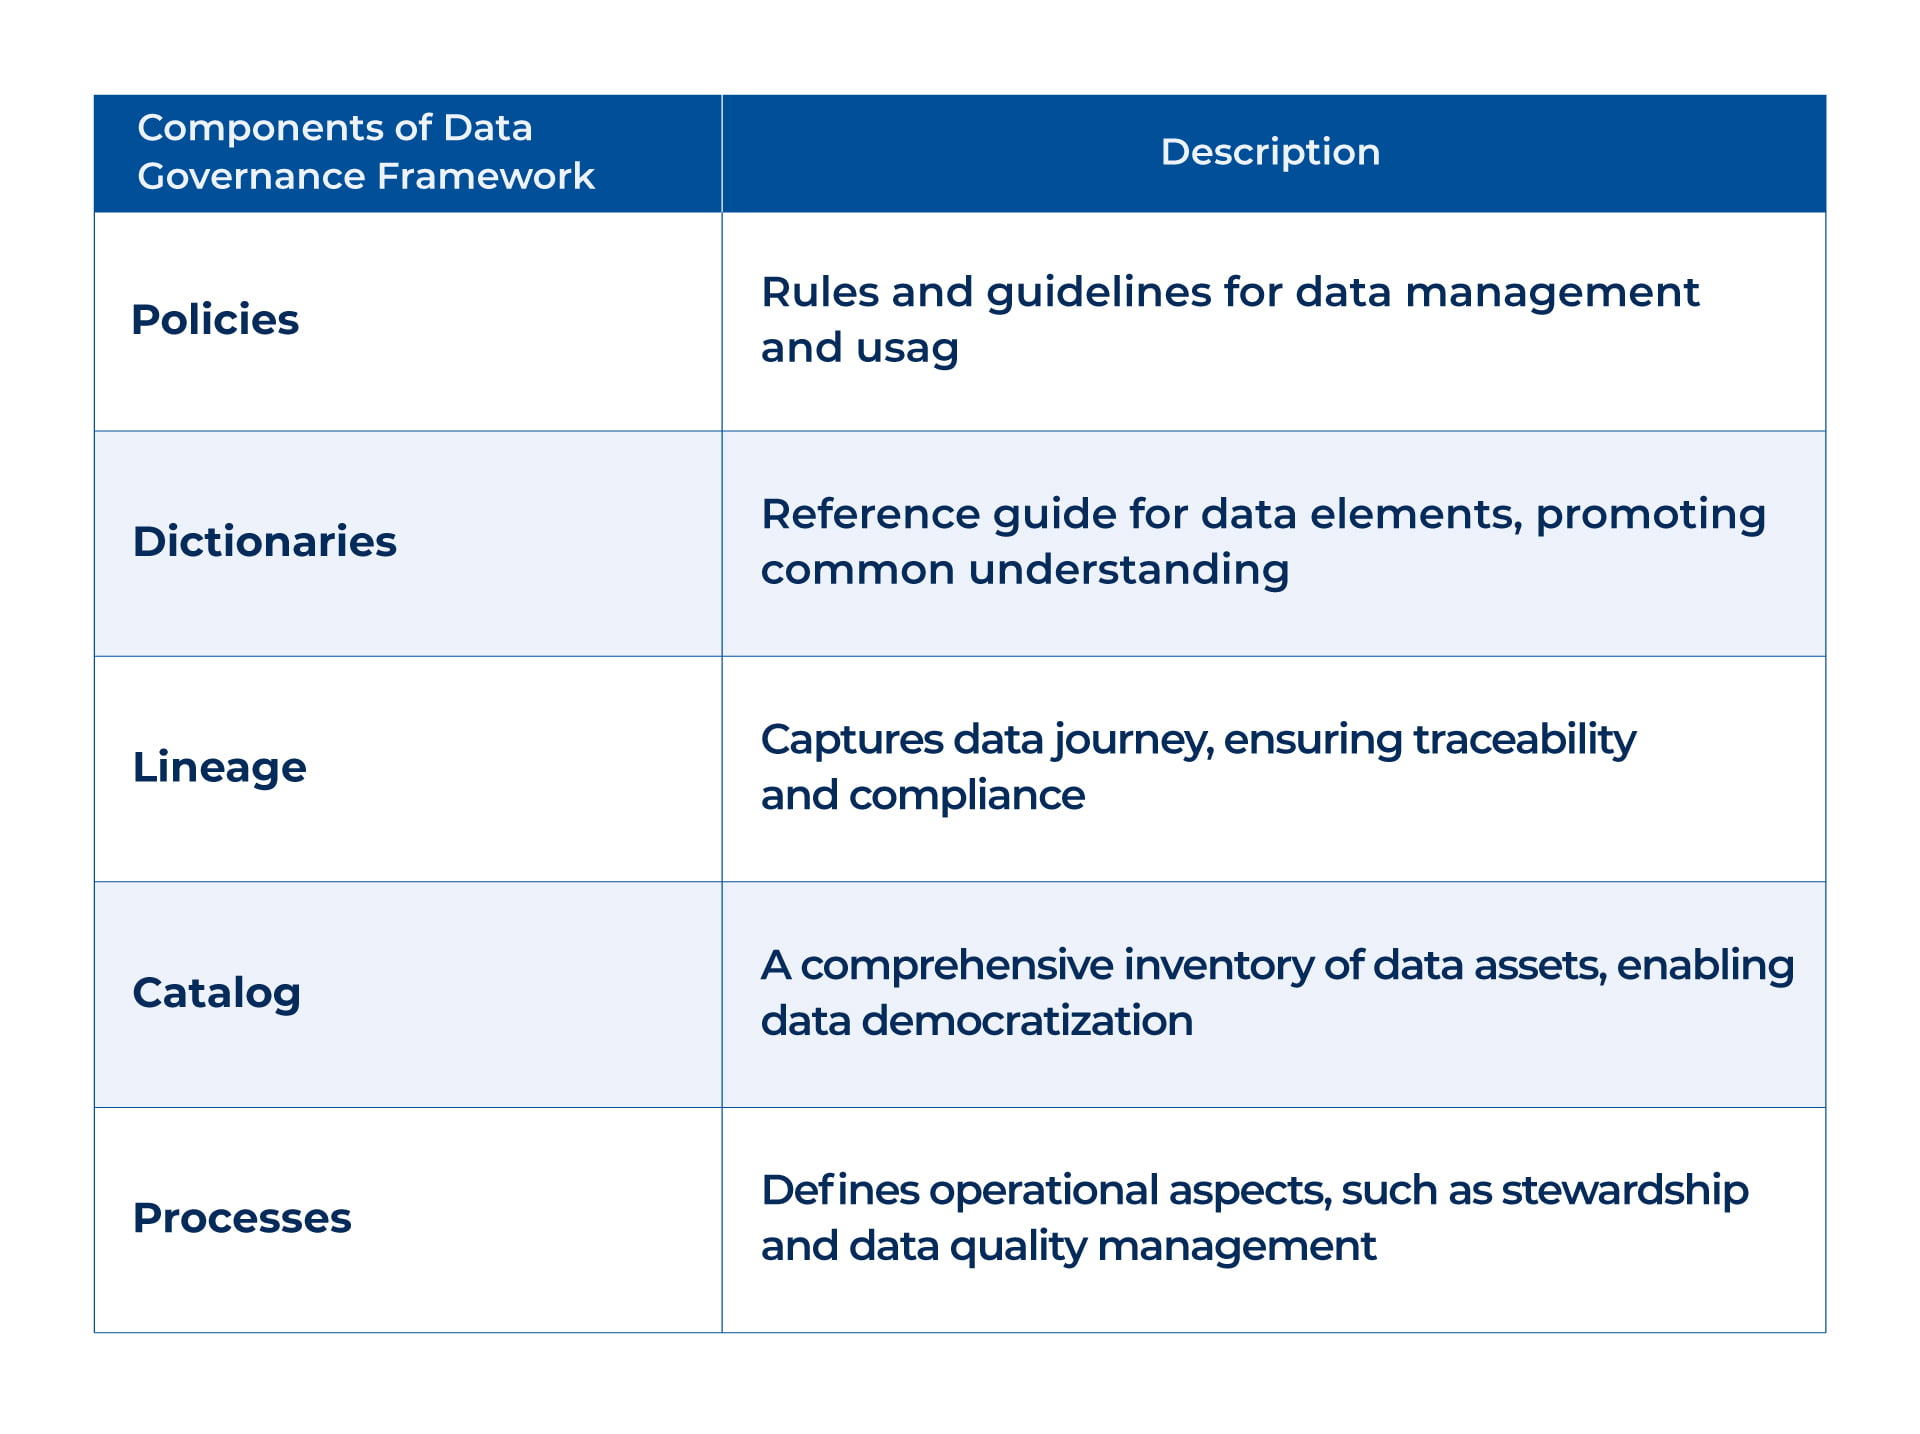 Components of data governance framework _Kanerika